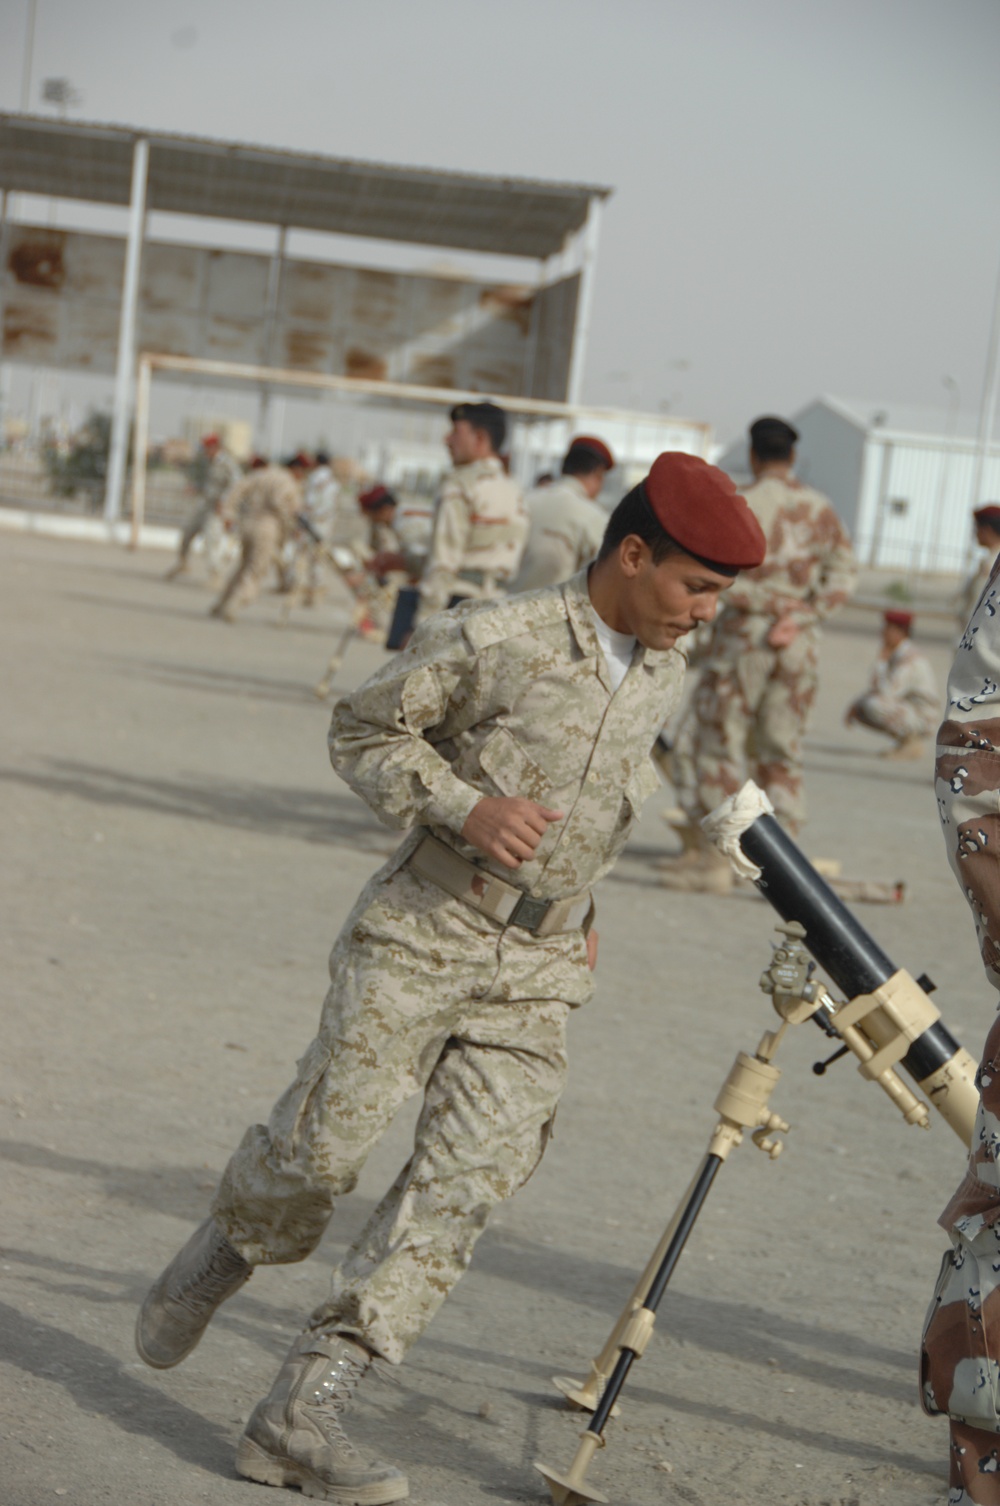 Basic mortar training